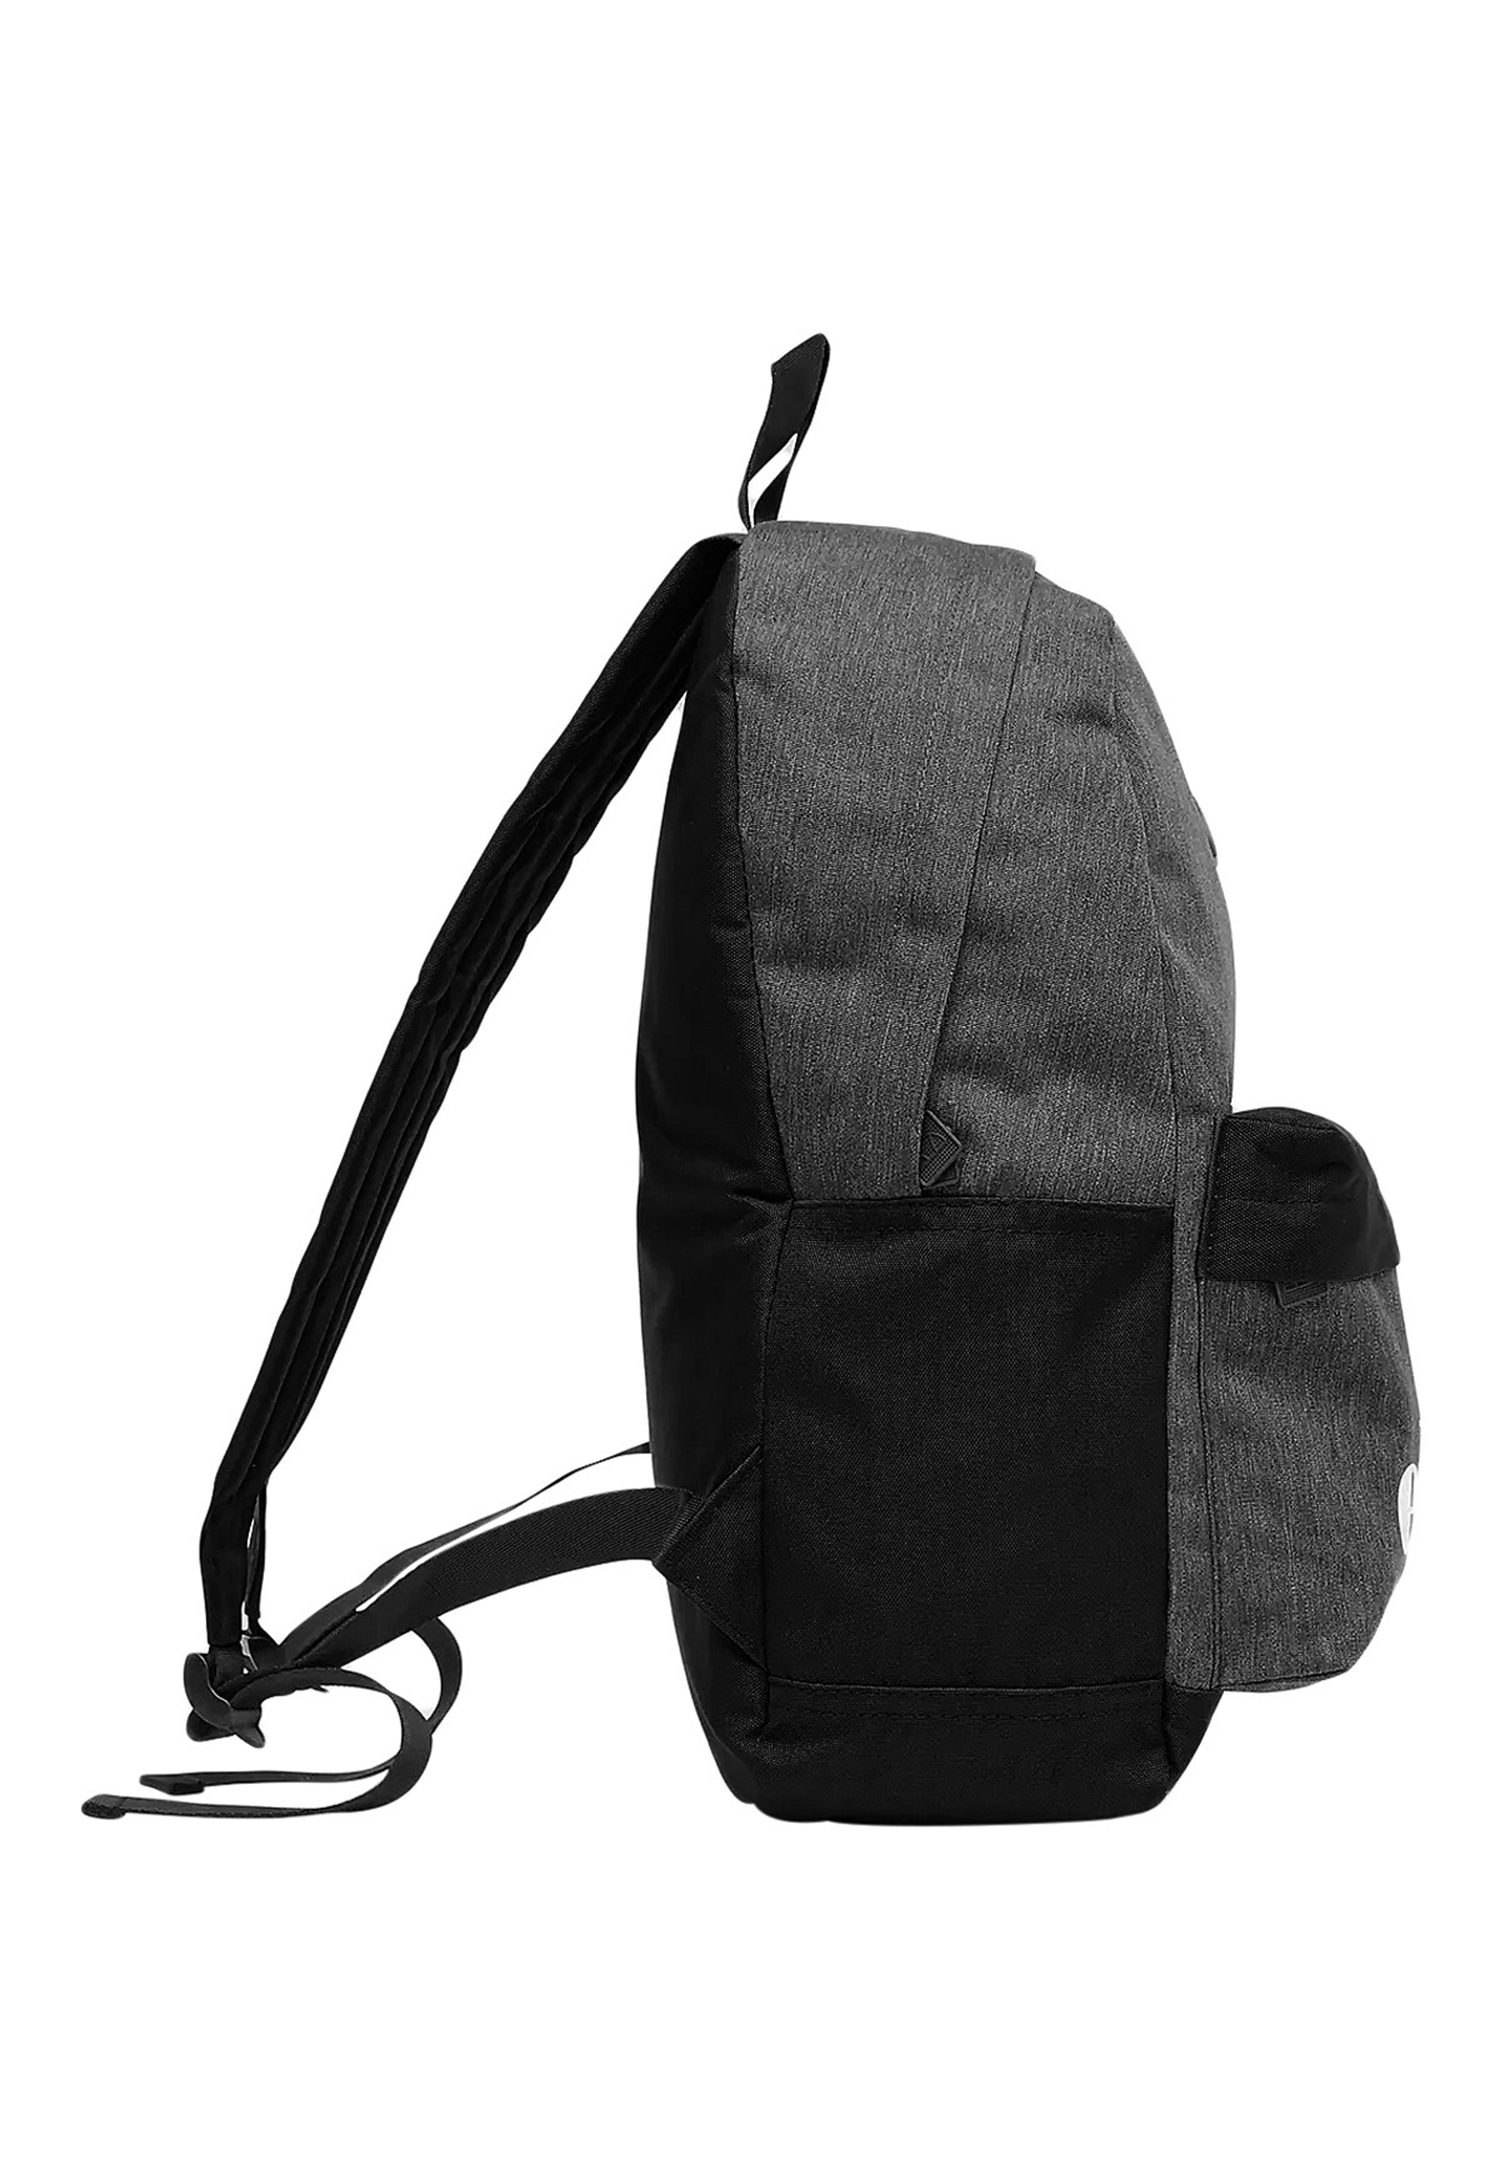 Ellesse Regent Backpack Rucksack Sport Freizeit Reise Schule SAAY0540 schwarz/grau